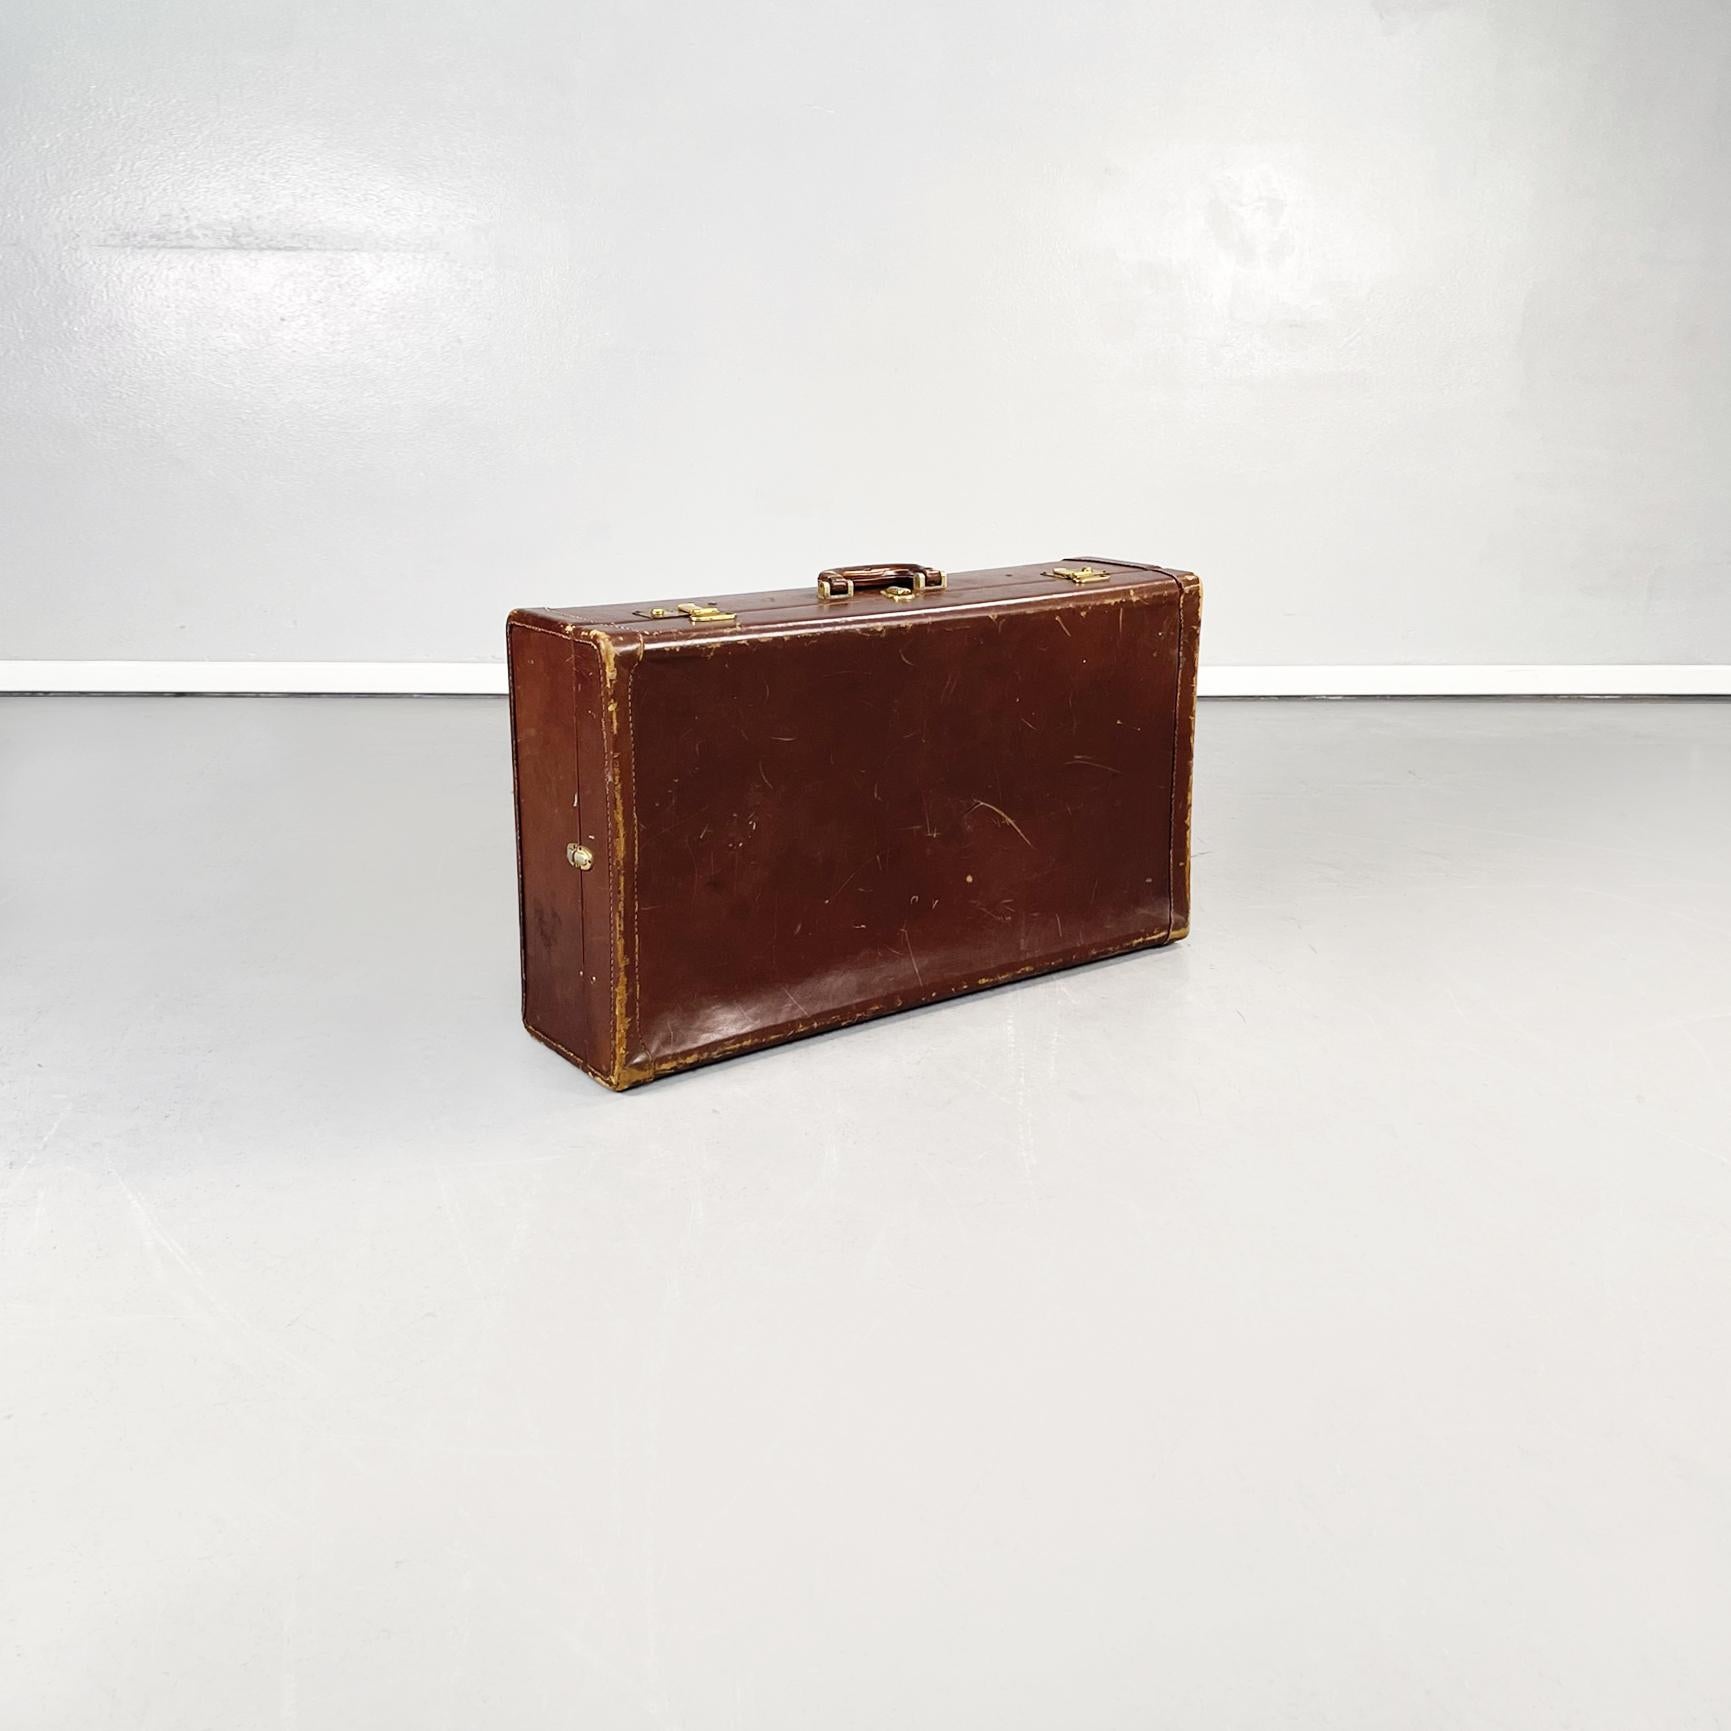 Italienisches Mid-Century Modern Gepäck in braunem Leder mit beigem Stoff, 1970er Jahre.
Rechteckiger Koffer aus braunem Leder. Verschluss aus Messing, Griff vorhanden. Innenausstattung aus beigem Stoff mit zwei elastischen Taschen und dünnen